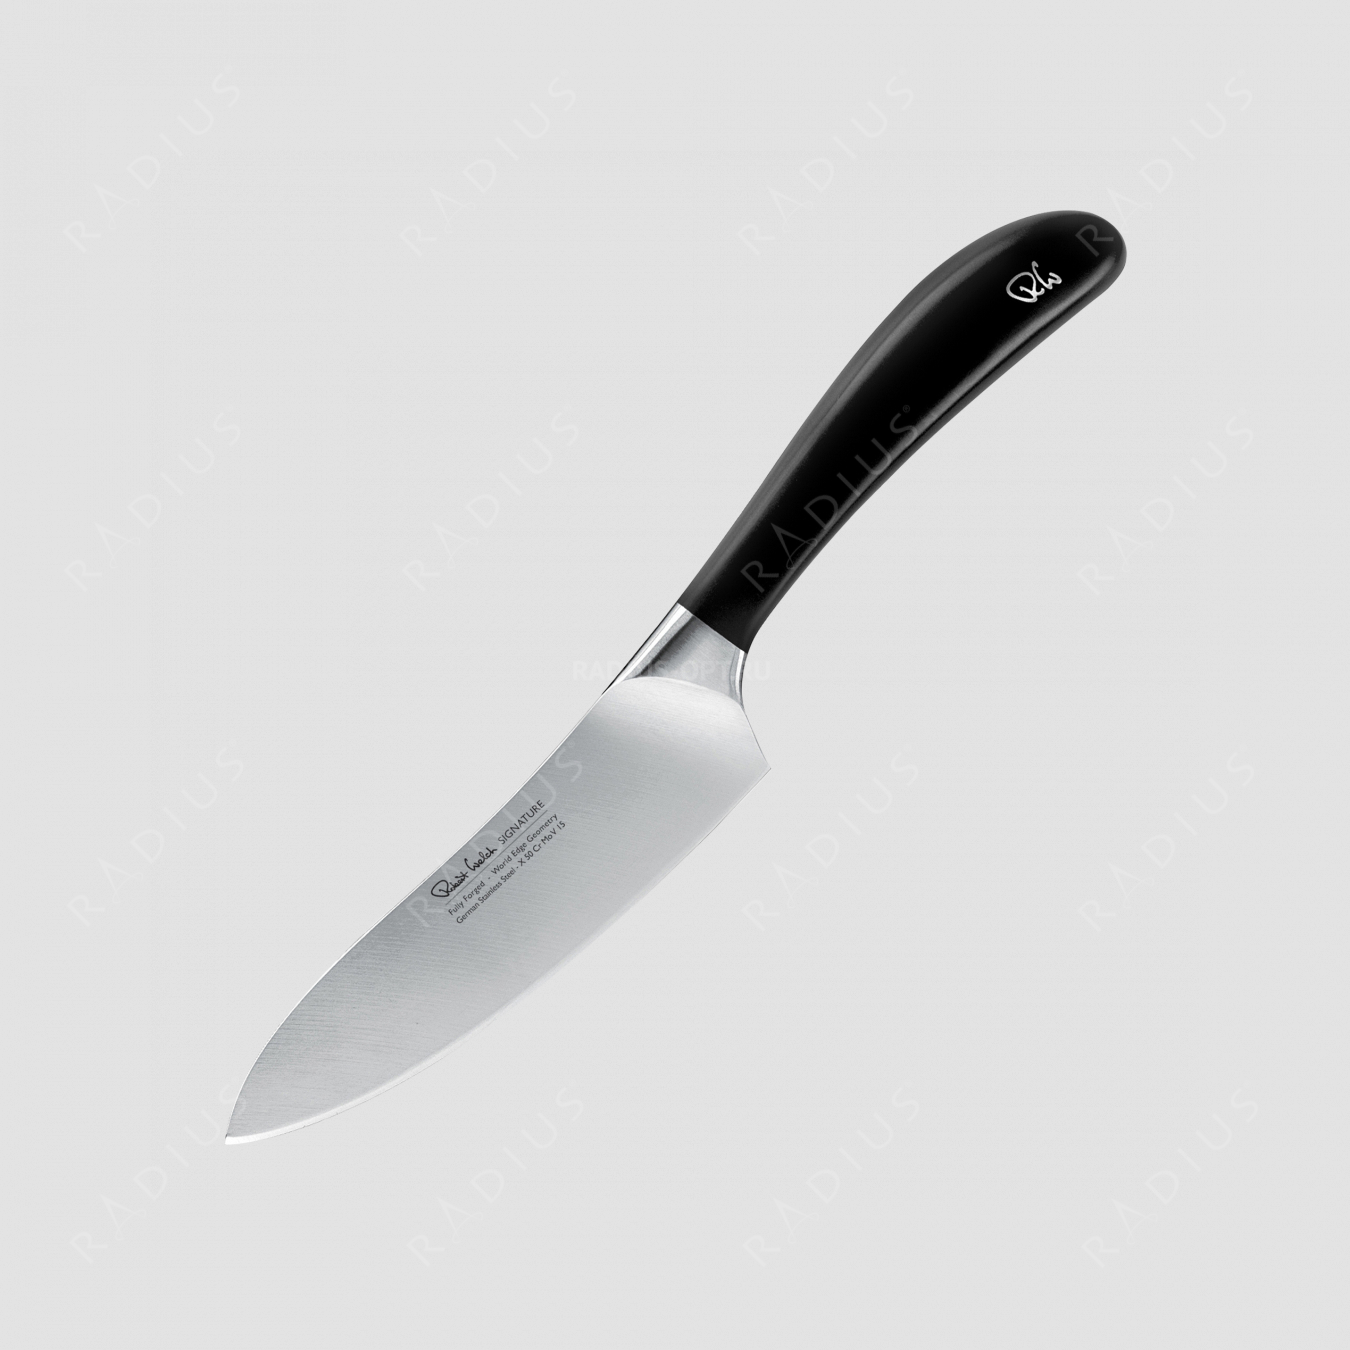 Профессиональный поварской кухонный нож 14 см, серия Signature, ROBERT WELCH, Великобритания